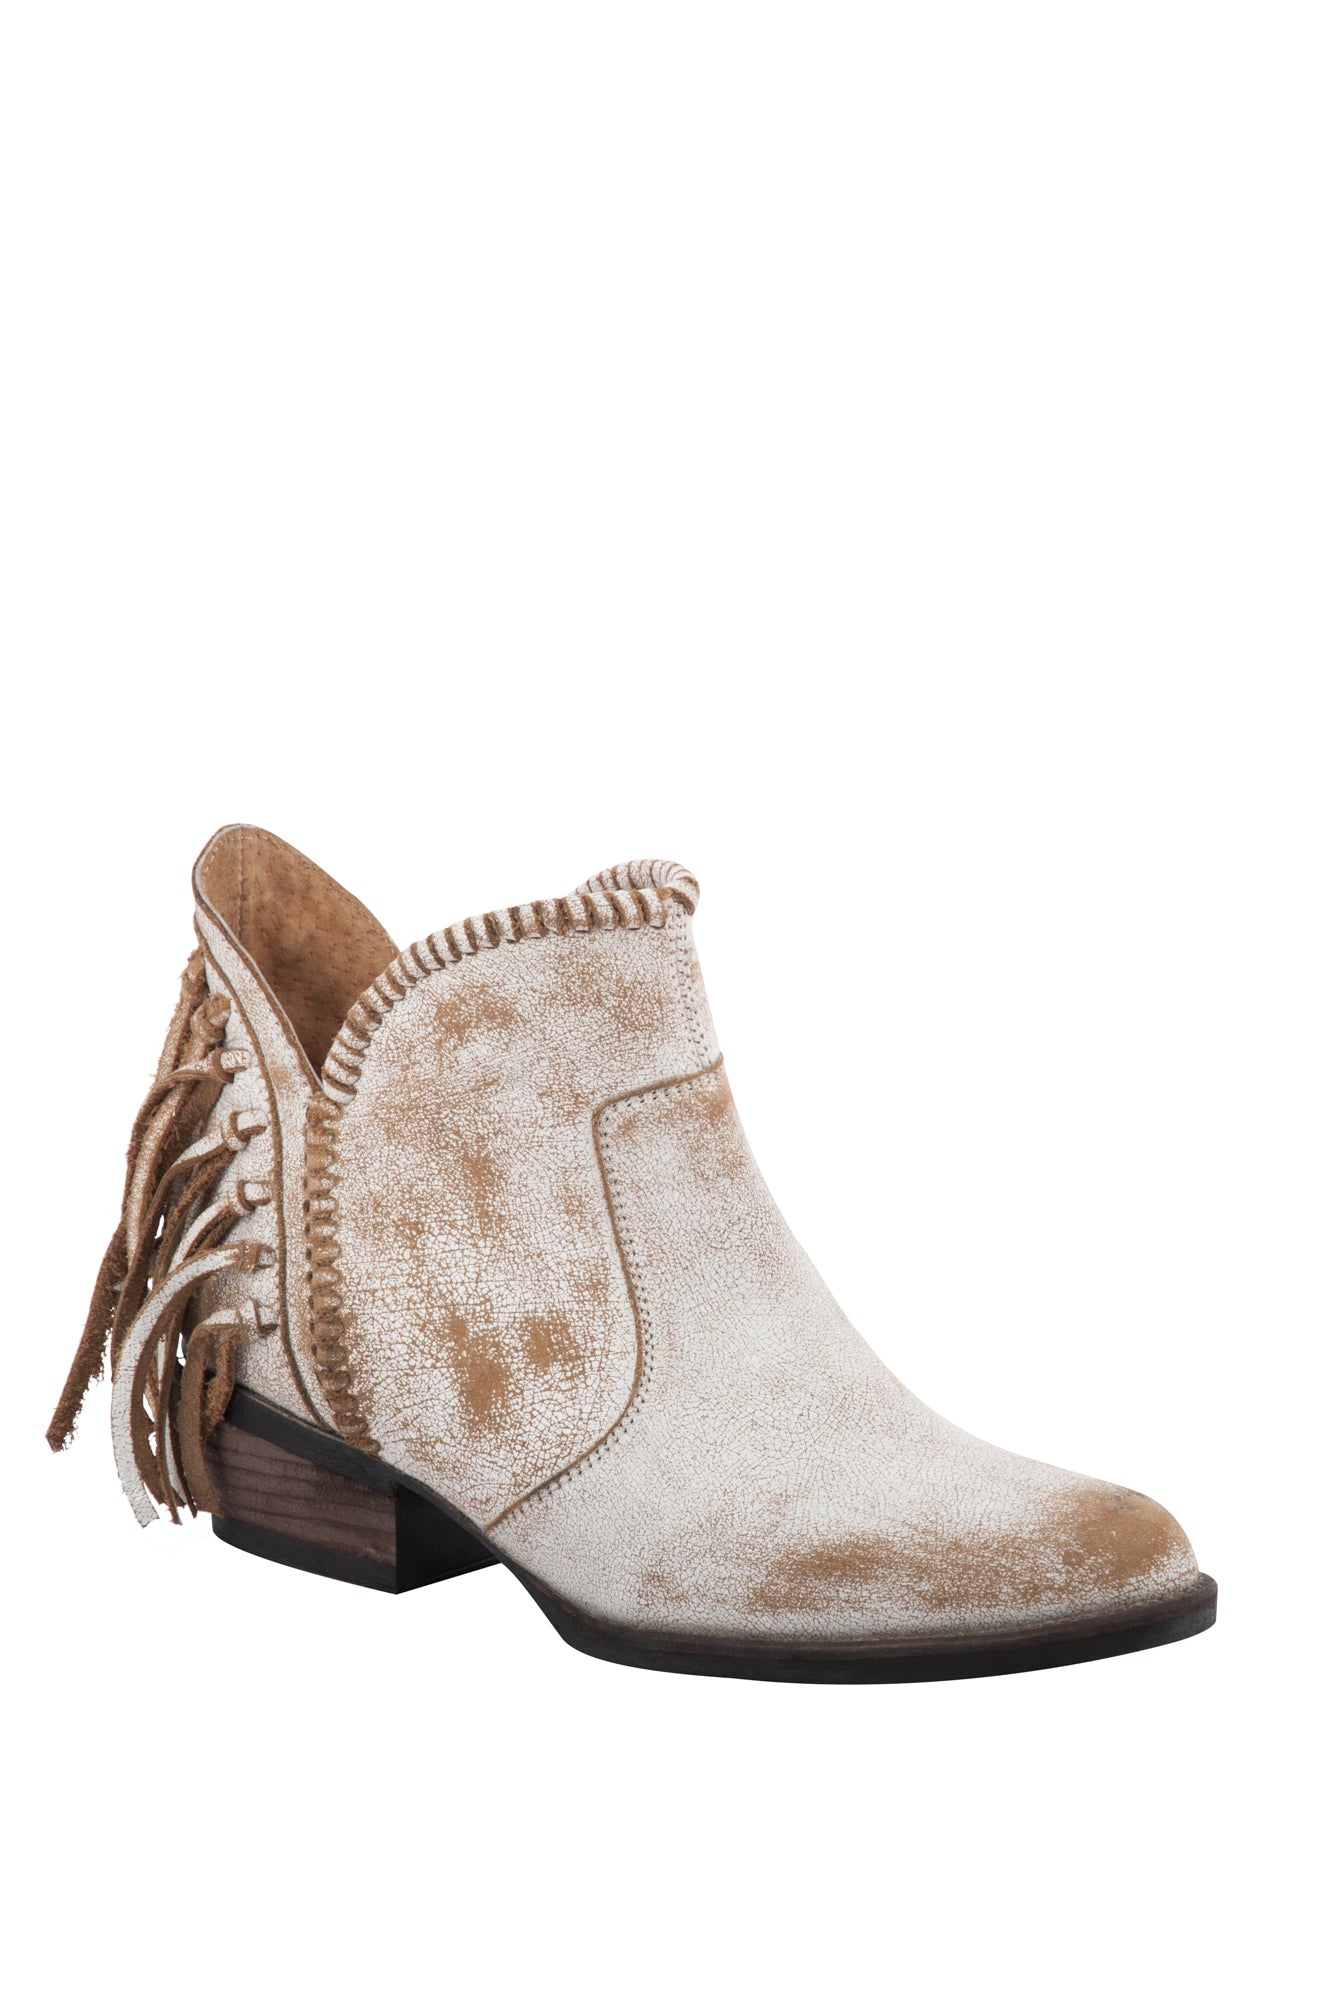 white fringe boots